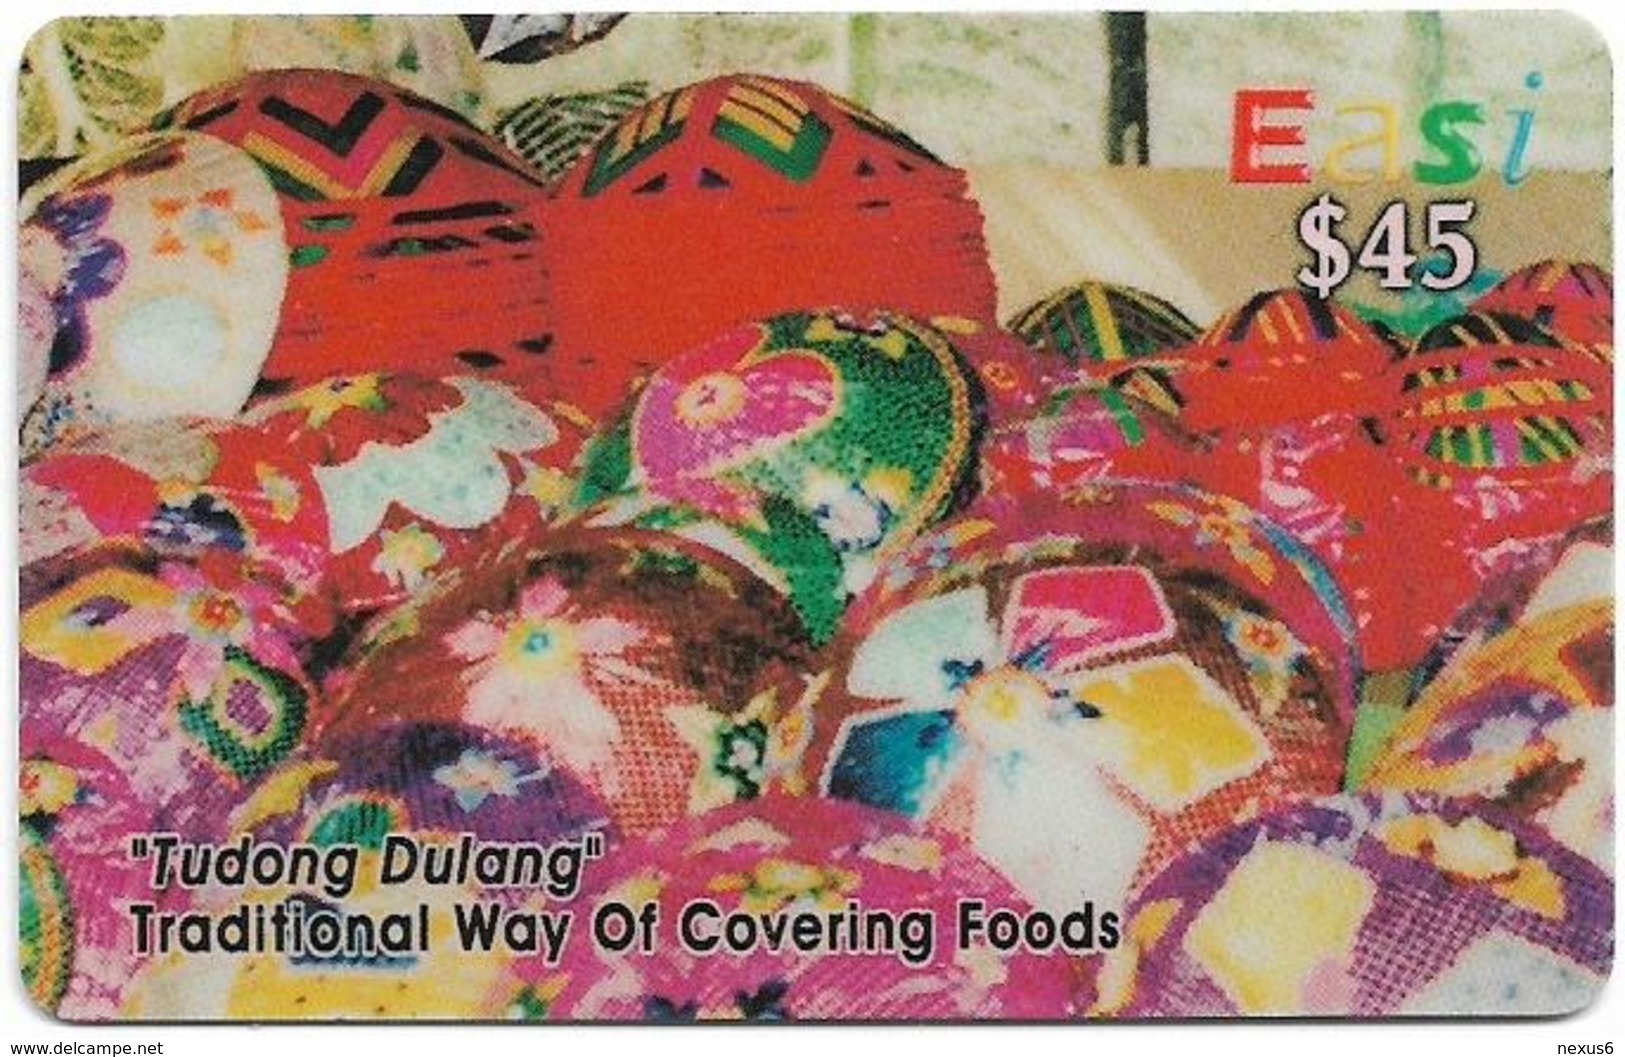 Brunei - DstCom - Easi - Tudong Dulang, Prepaid 45$, Used - Brunei